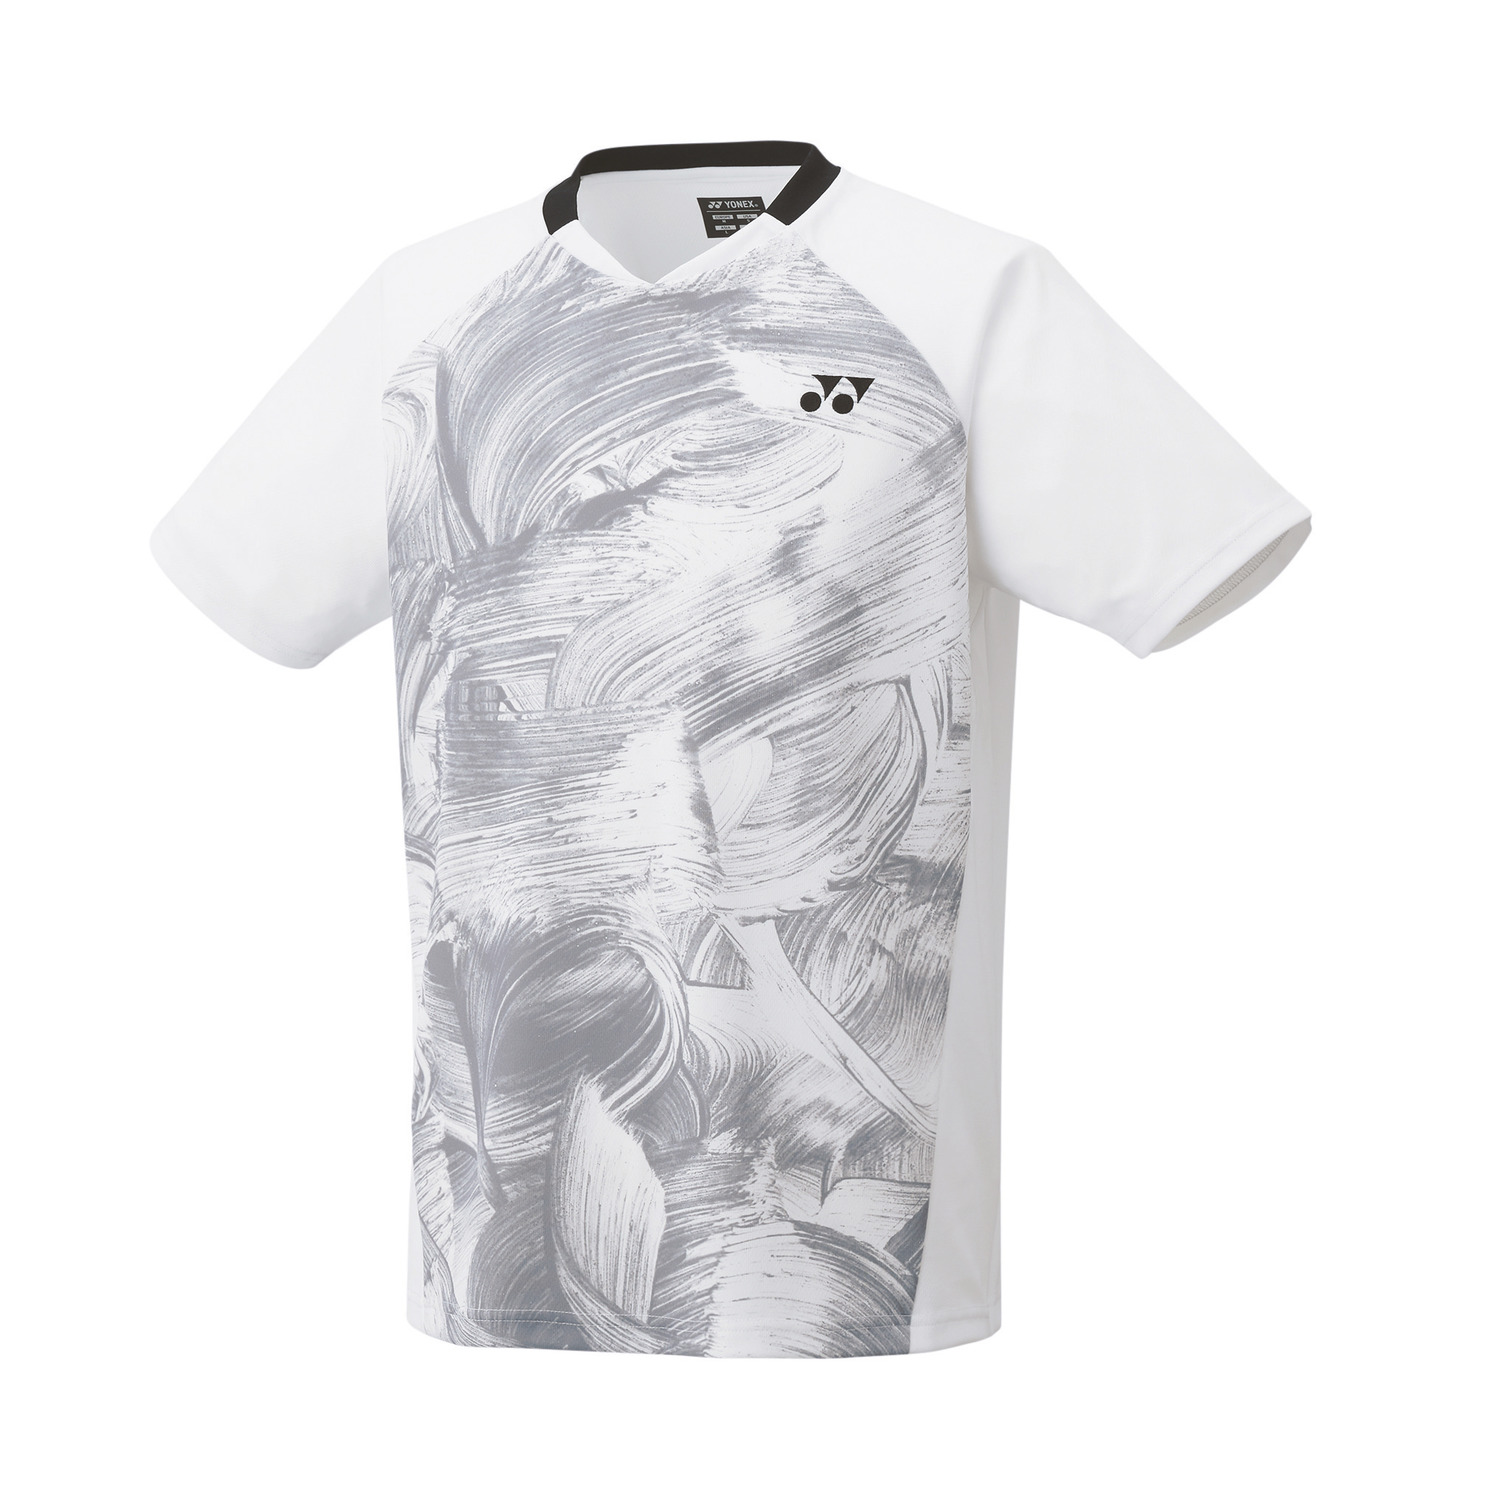 Yonex Premium Game Shirt 10605 White (Made in Japan) MEN'S